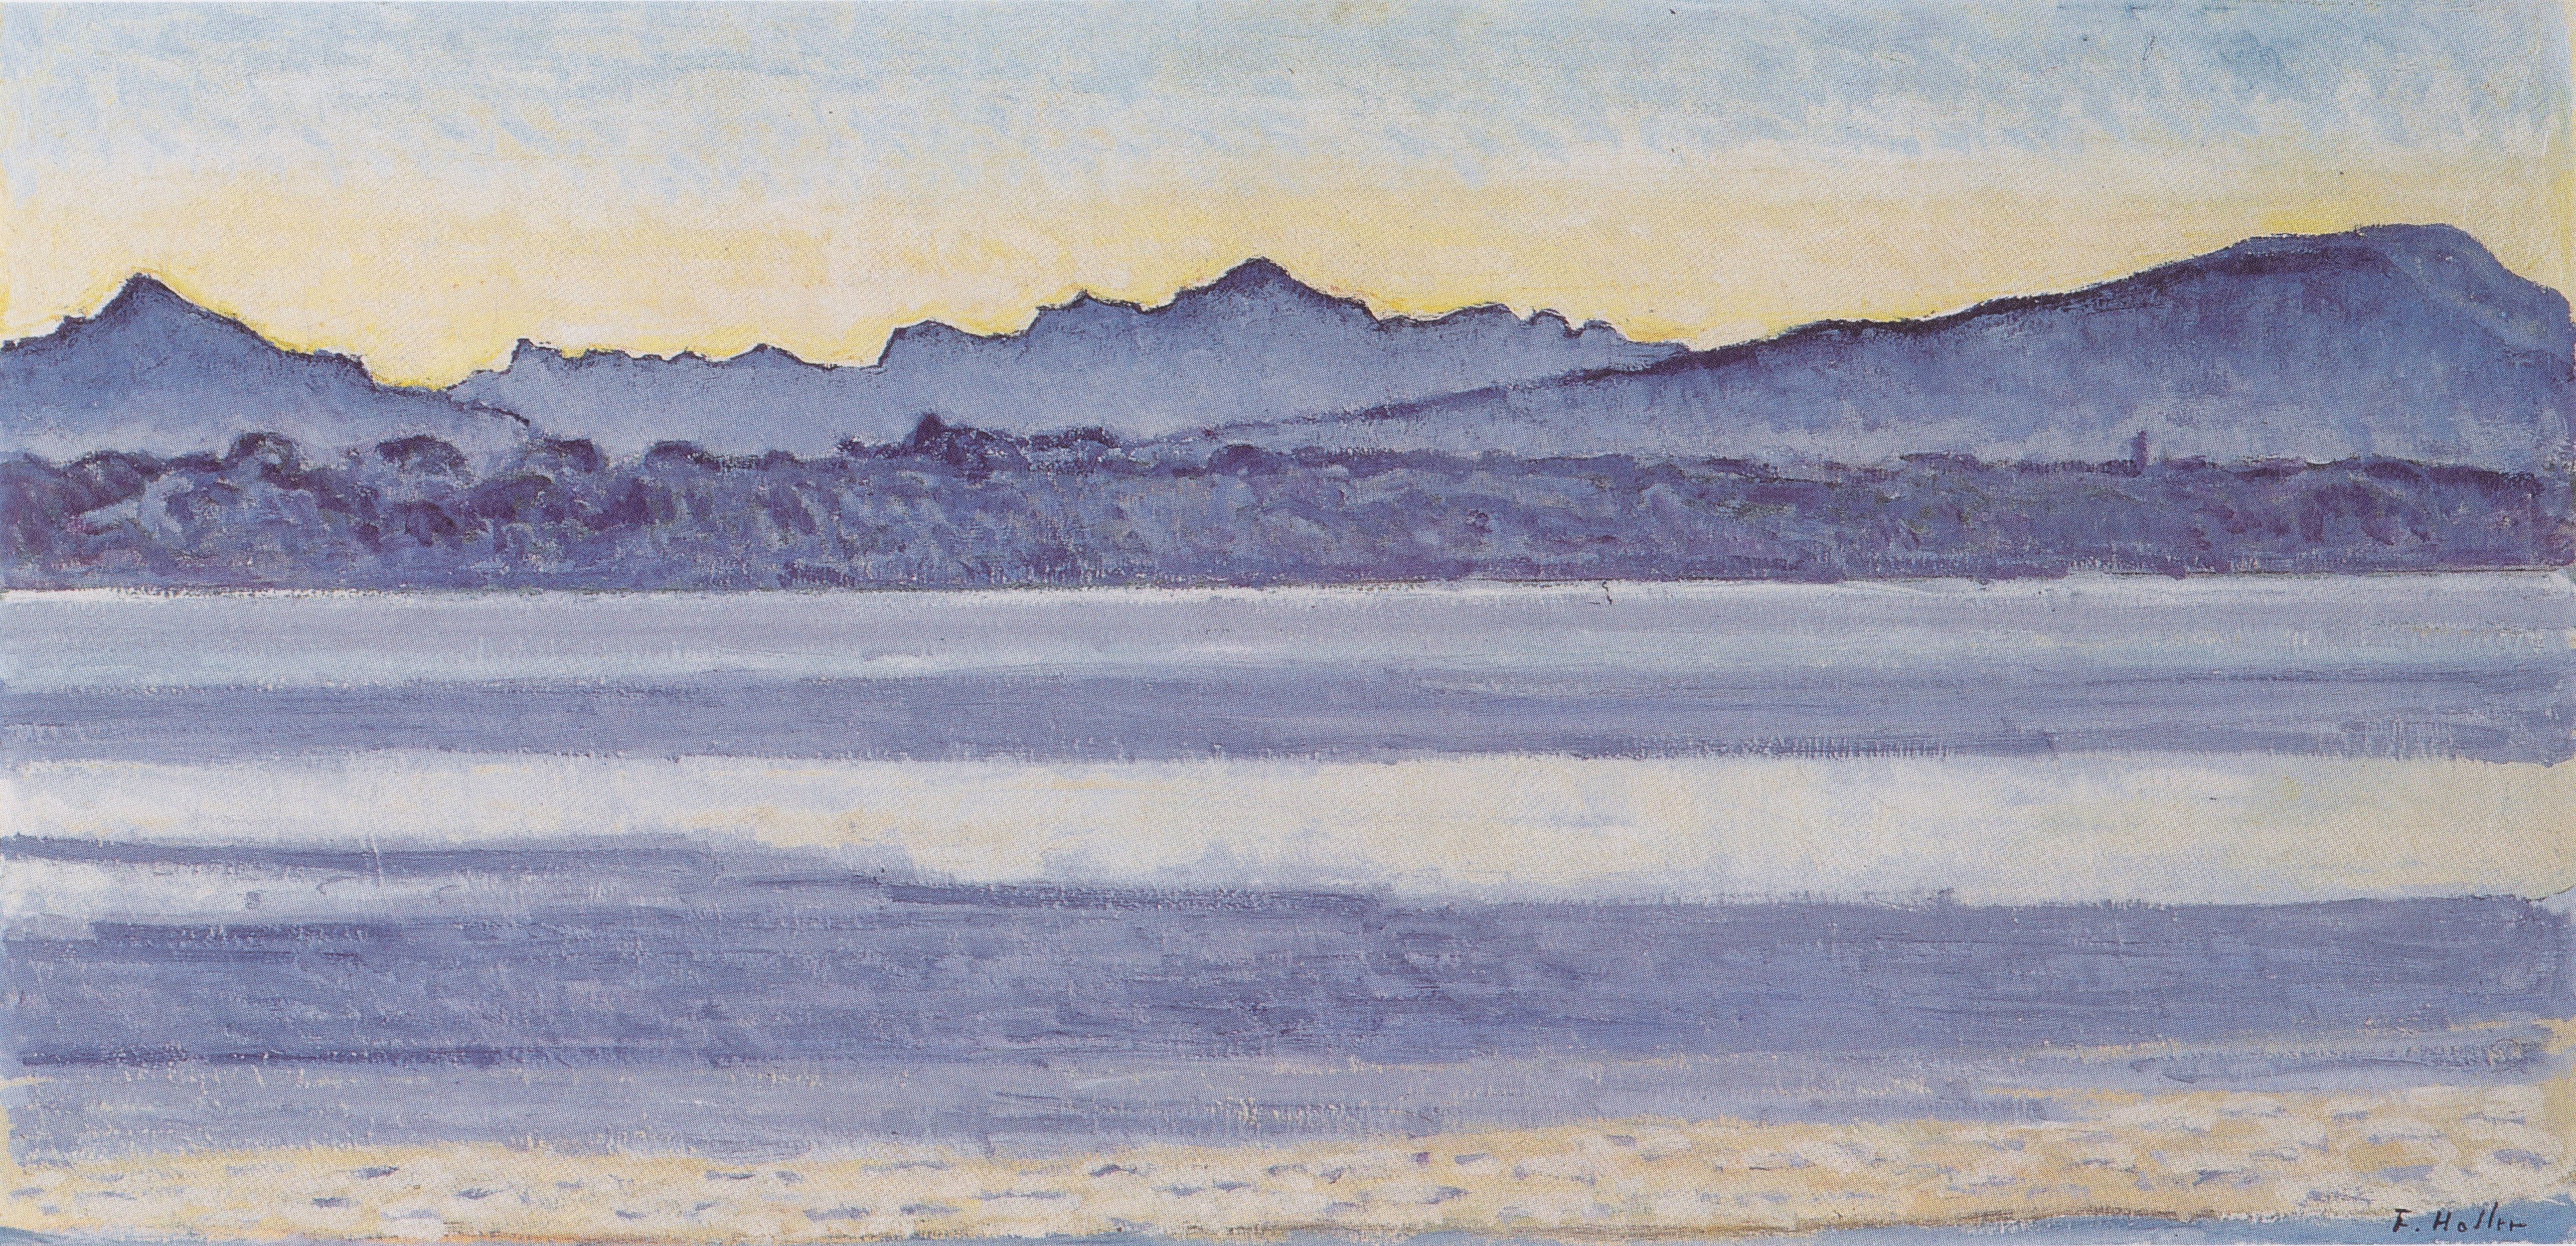 https://uploads4.wikiart.org/images/ferdinand-hodler/lake-geneva-with-mont-blanc-in-the-morning-light-1918.jpg